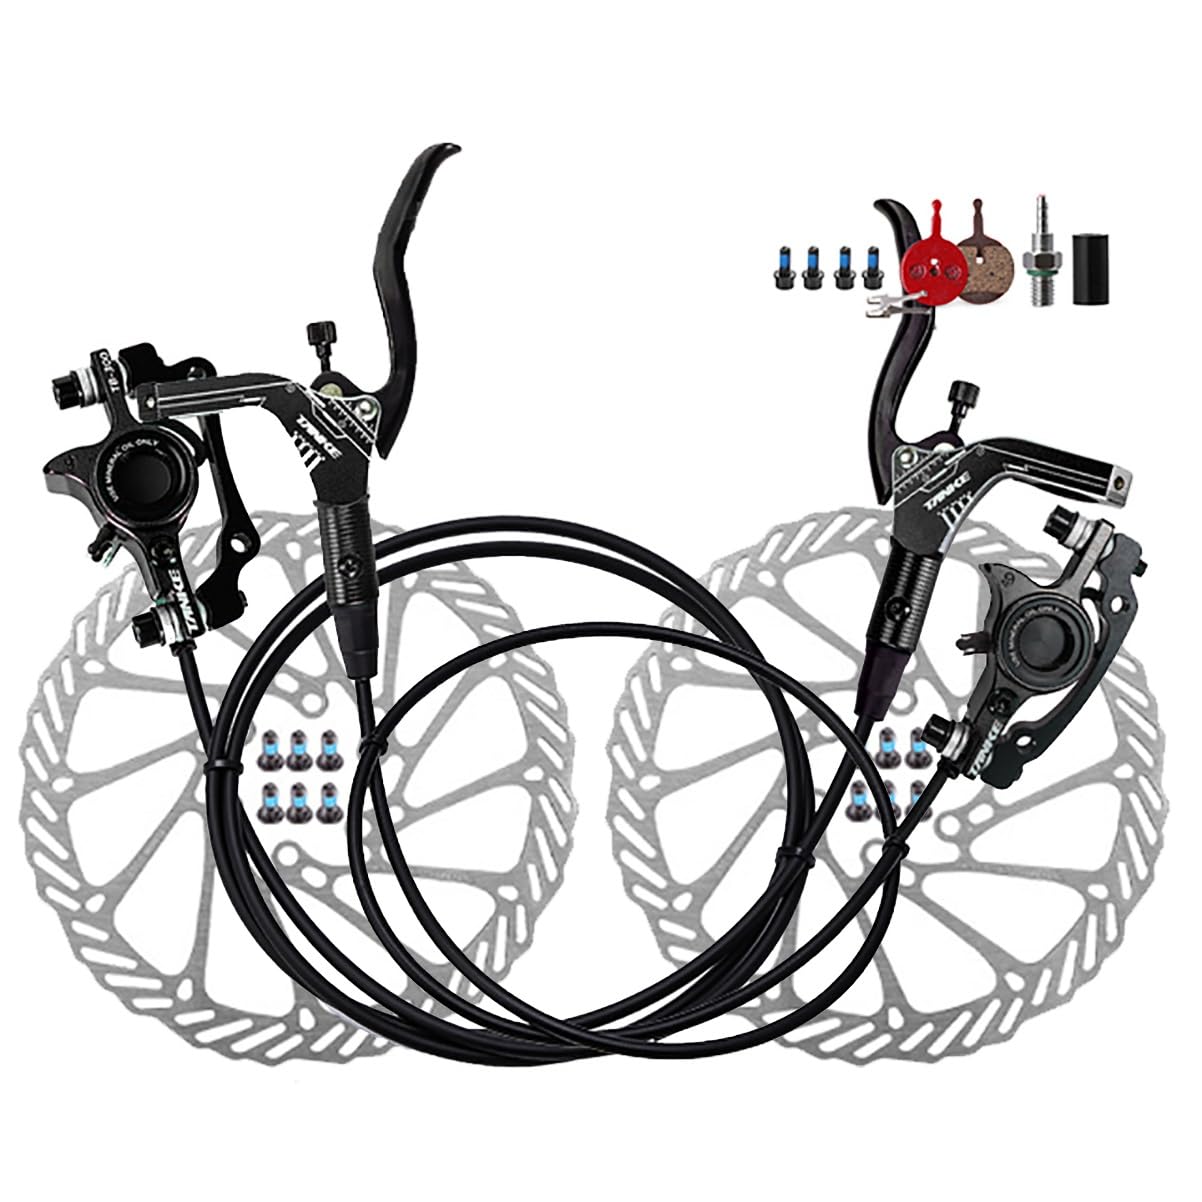 Fahrrad Hydraulische Scheibenbremse Set 2 Kolben Mountainbike Bremssattel Mit 160mm Rotoren 800mm Links Vorne 1400mm Rechts Hinten Bremsensatz (Color : Black) von DFNBVDRR